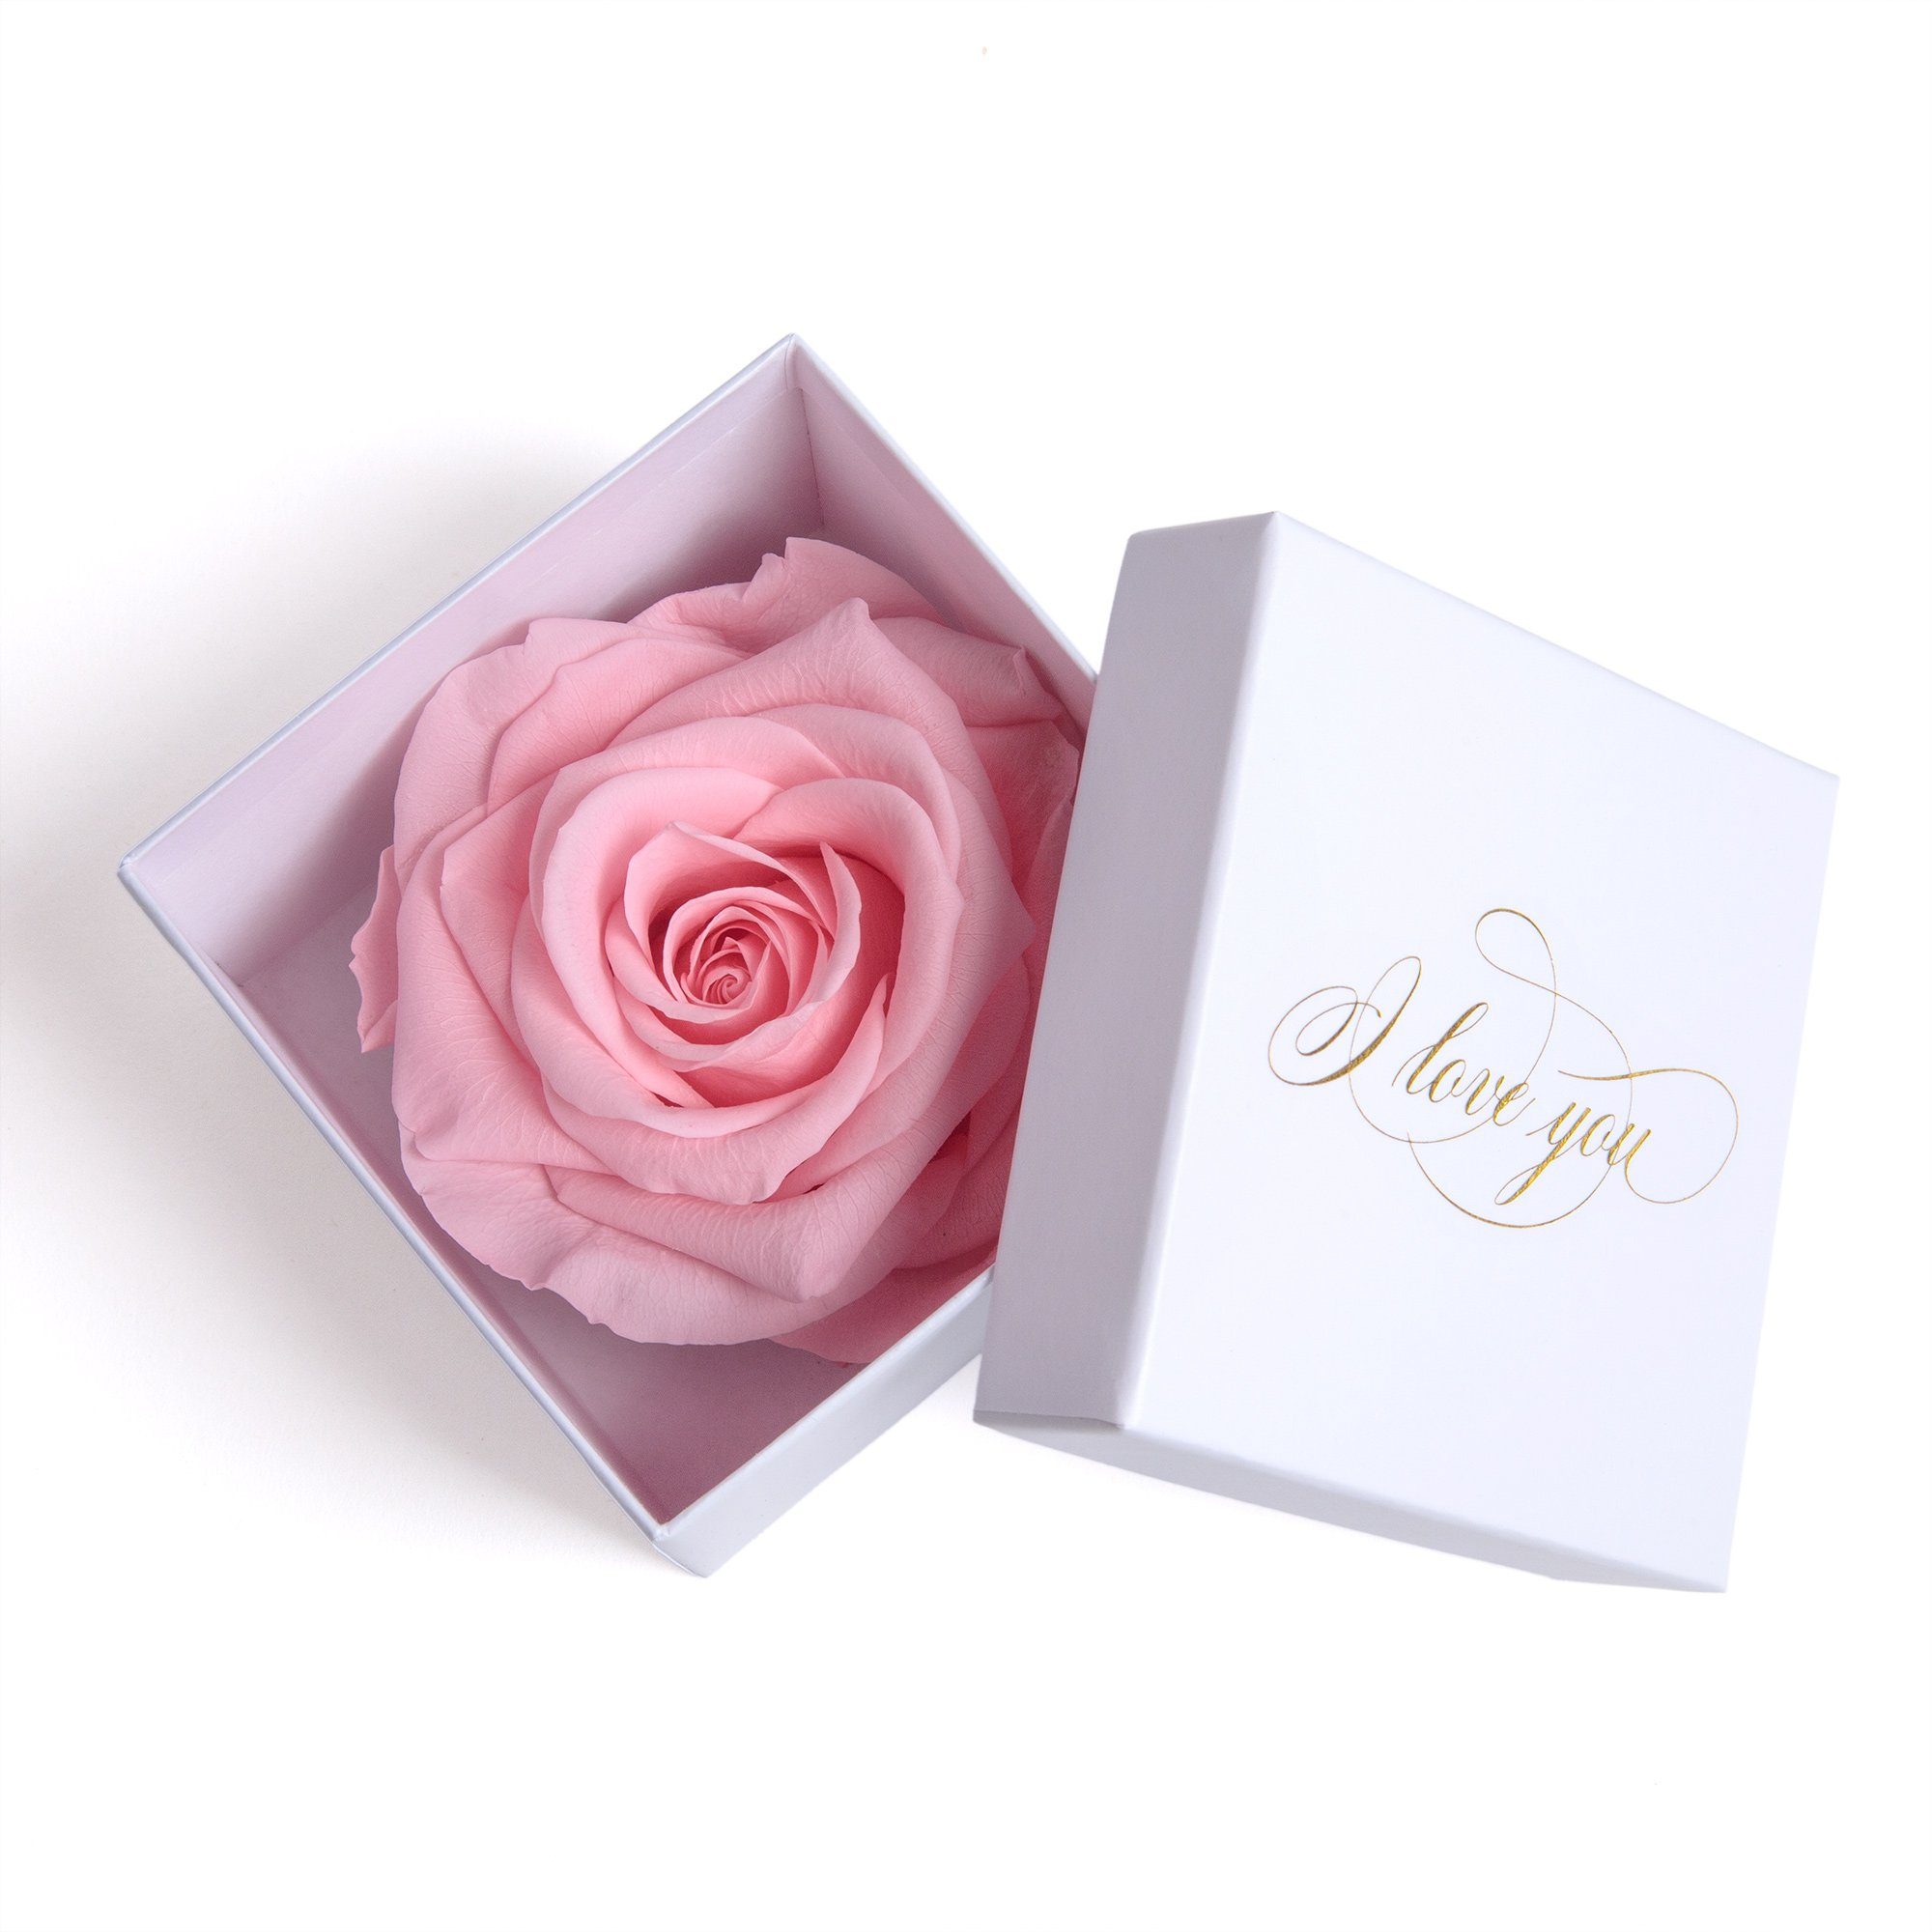 Kunstblume Infinity Rose in Box weiß I LOVE YOU Geschenk Frauen Liebesbeweis Valentinstag Rose, ROSEMARIE SCHULZ Heidelberg, Höhe 6 cm, Rose haltbar bis zu 3 Jahre rosa